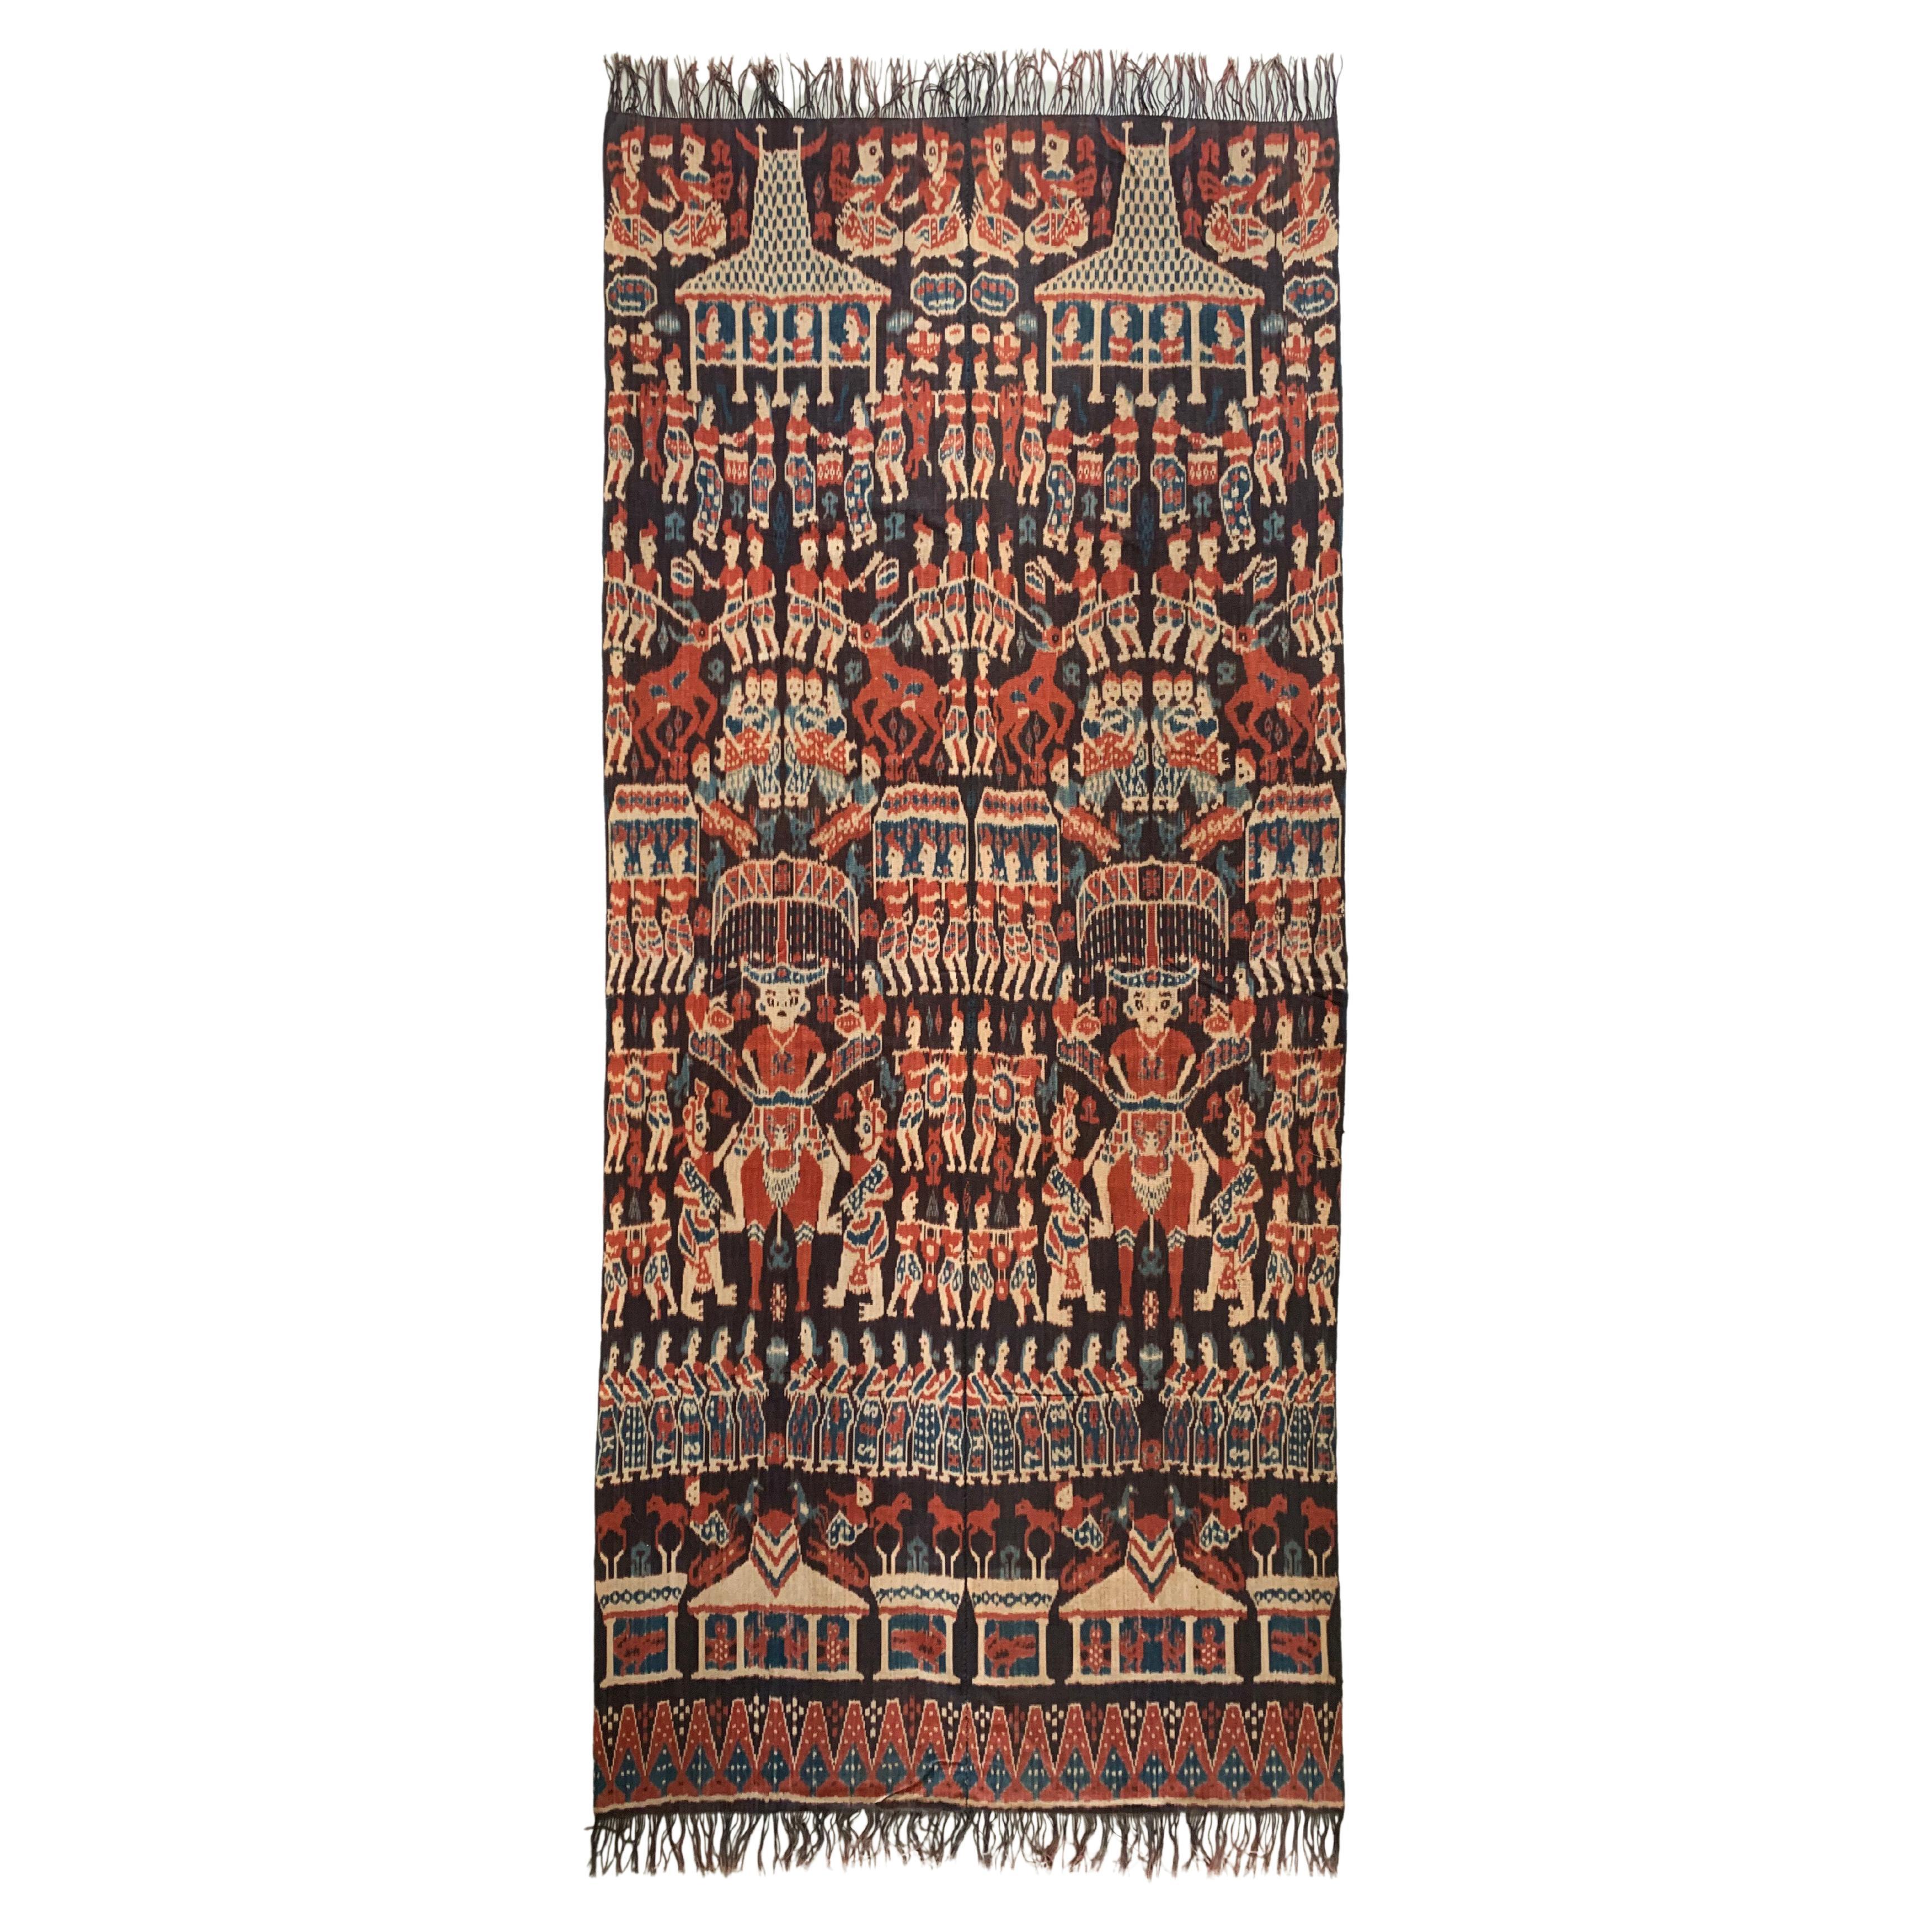 Textile Ikat de l'île de Sumba avec d'étonnants motifs tribaux, Indonésie